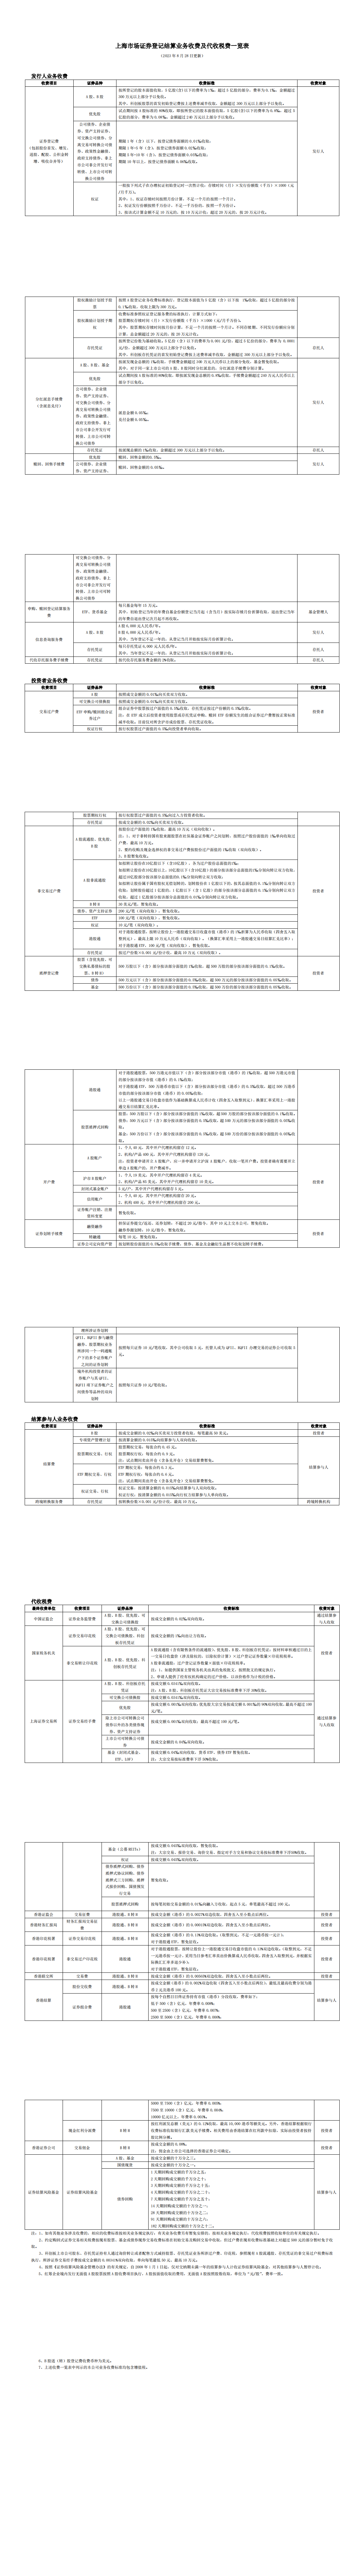 上海市场证券登记结算业务收费及代收税费一览表（20230825挂网更新清洁版）_00.png